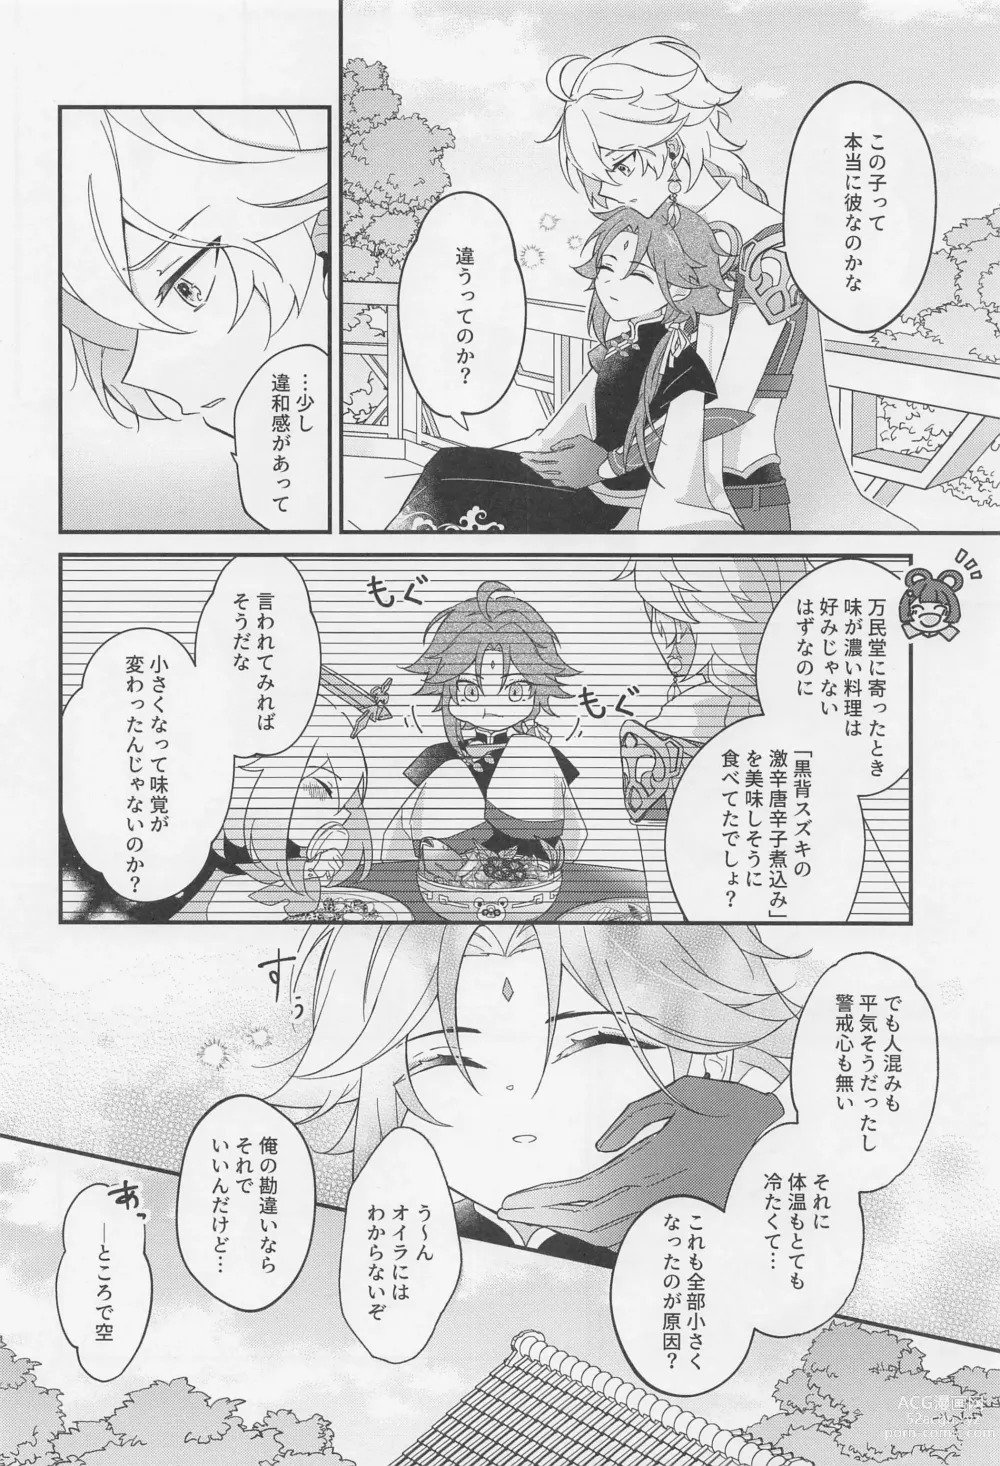 Page 13 of doujinshi Kimi o Wazurau